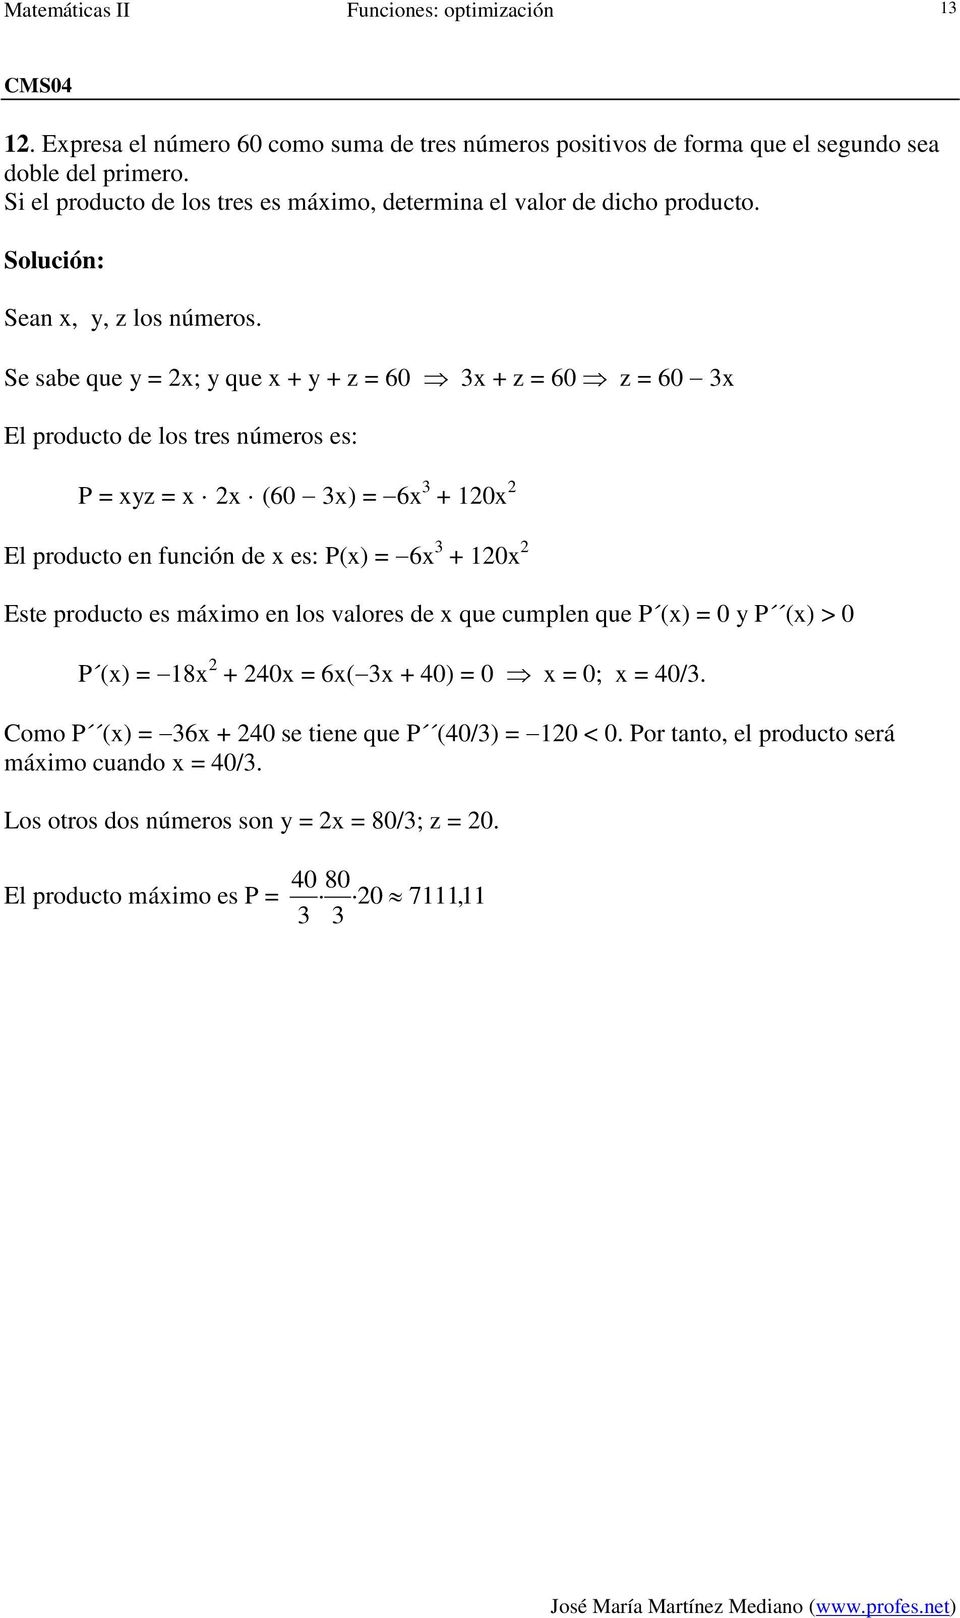 Se sbe que y = ; y que + y + z = 60 + z = 60 z = 60 El producto de los tres números es: P = yz = (60 ) = 6 + 0 El producto en función de es: P() = 6 + 0 Este